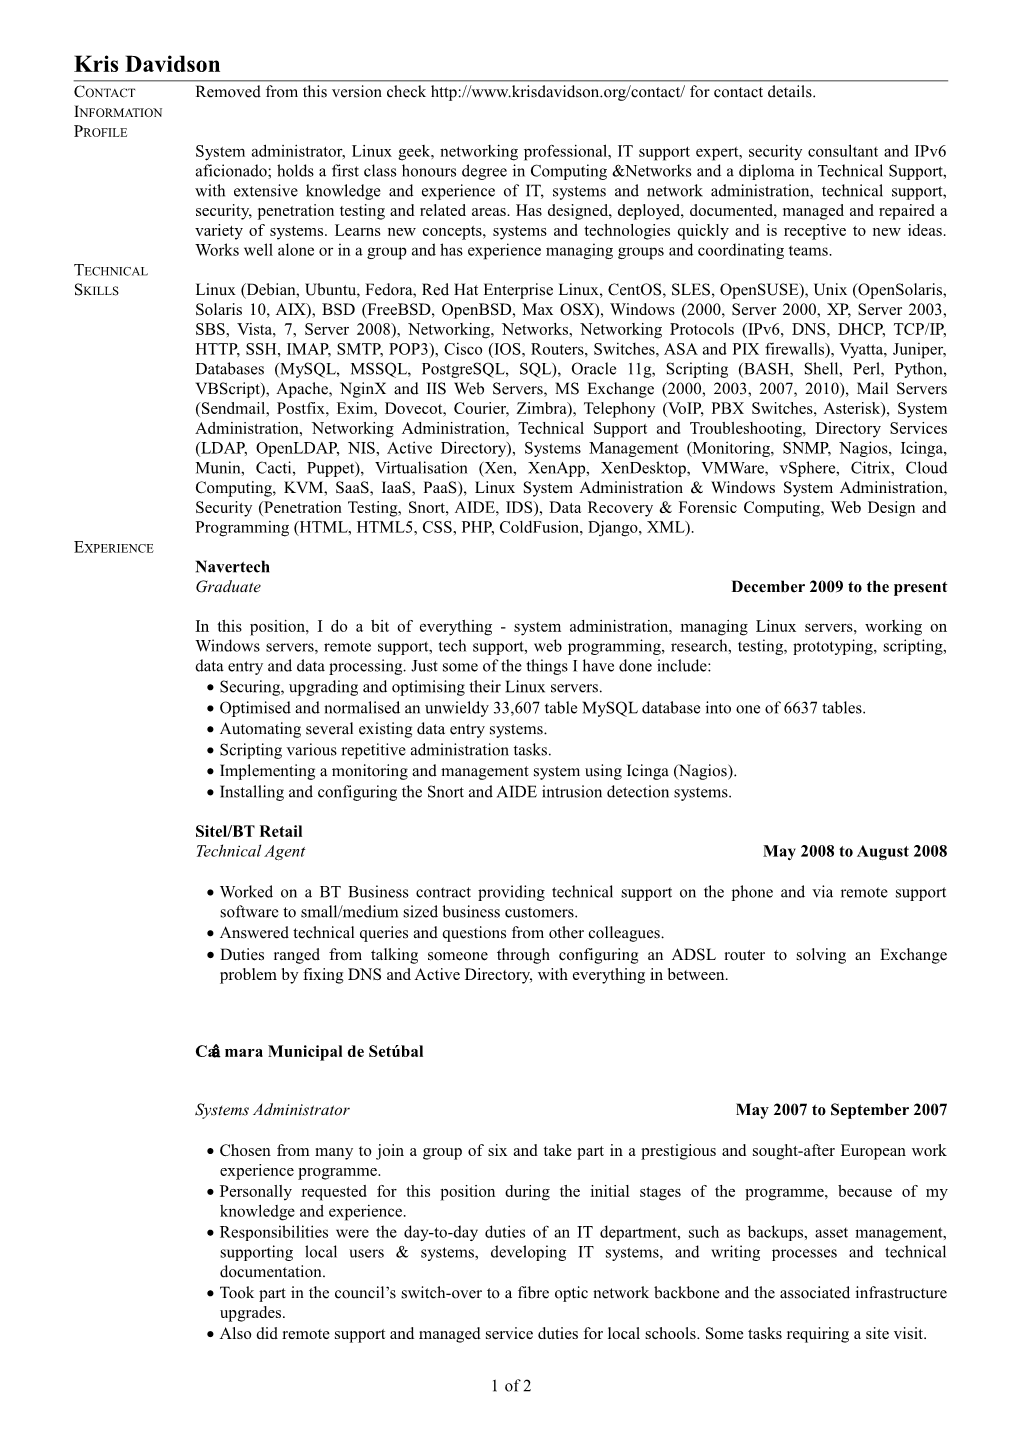 Kris Davidson's CV